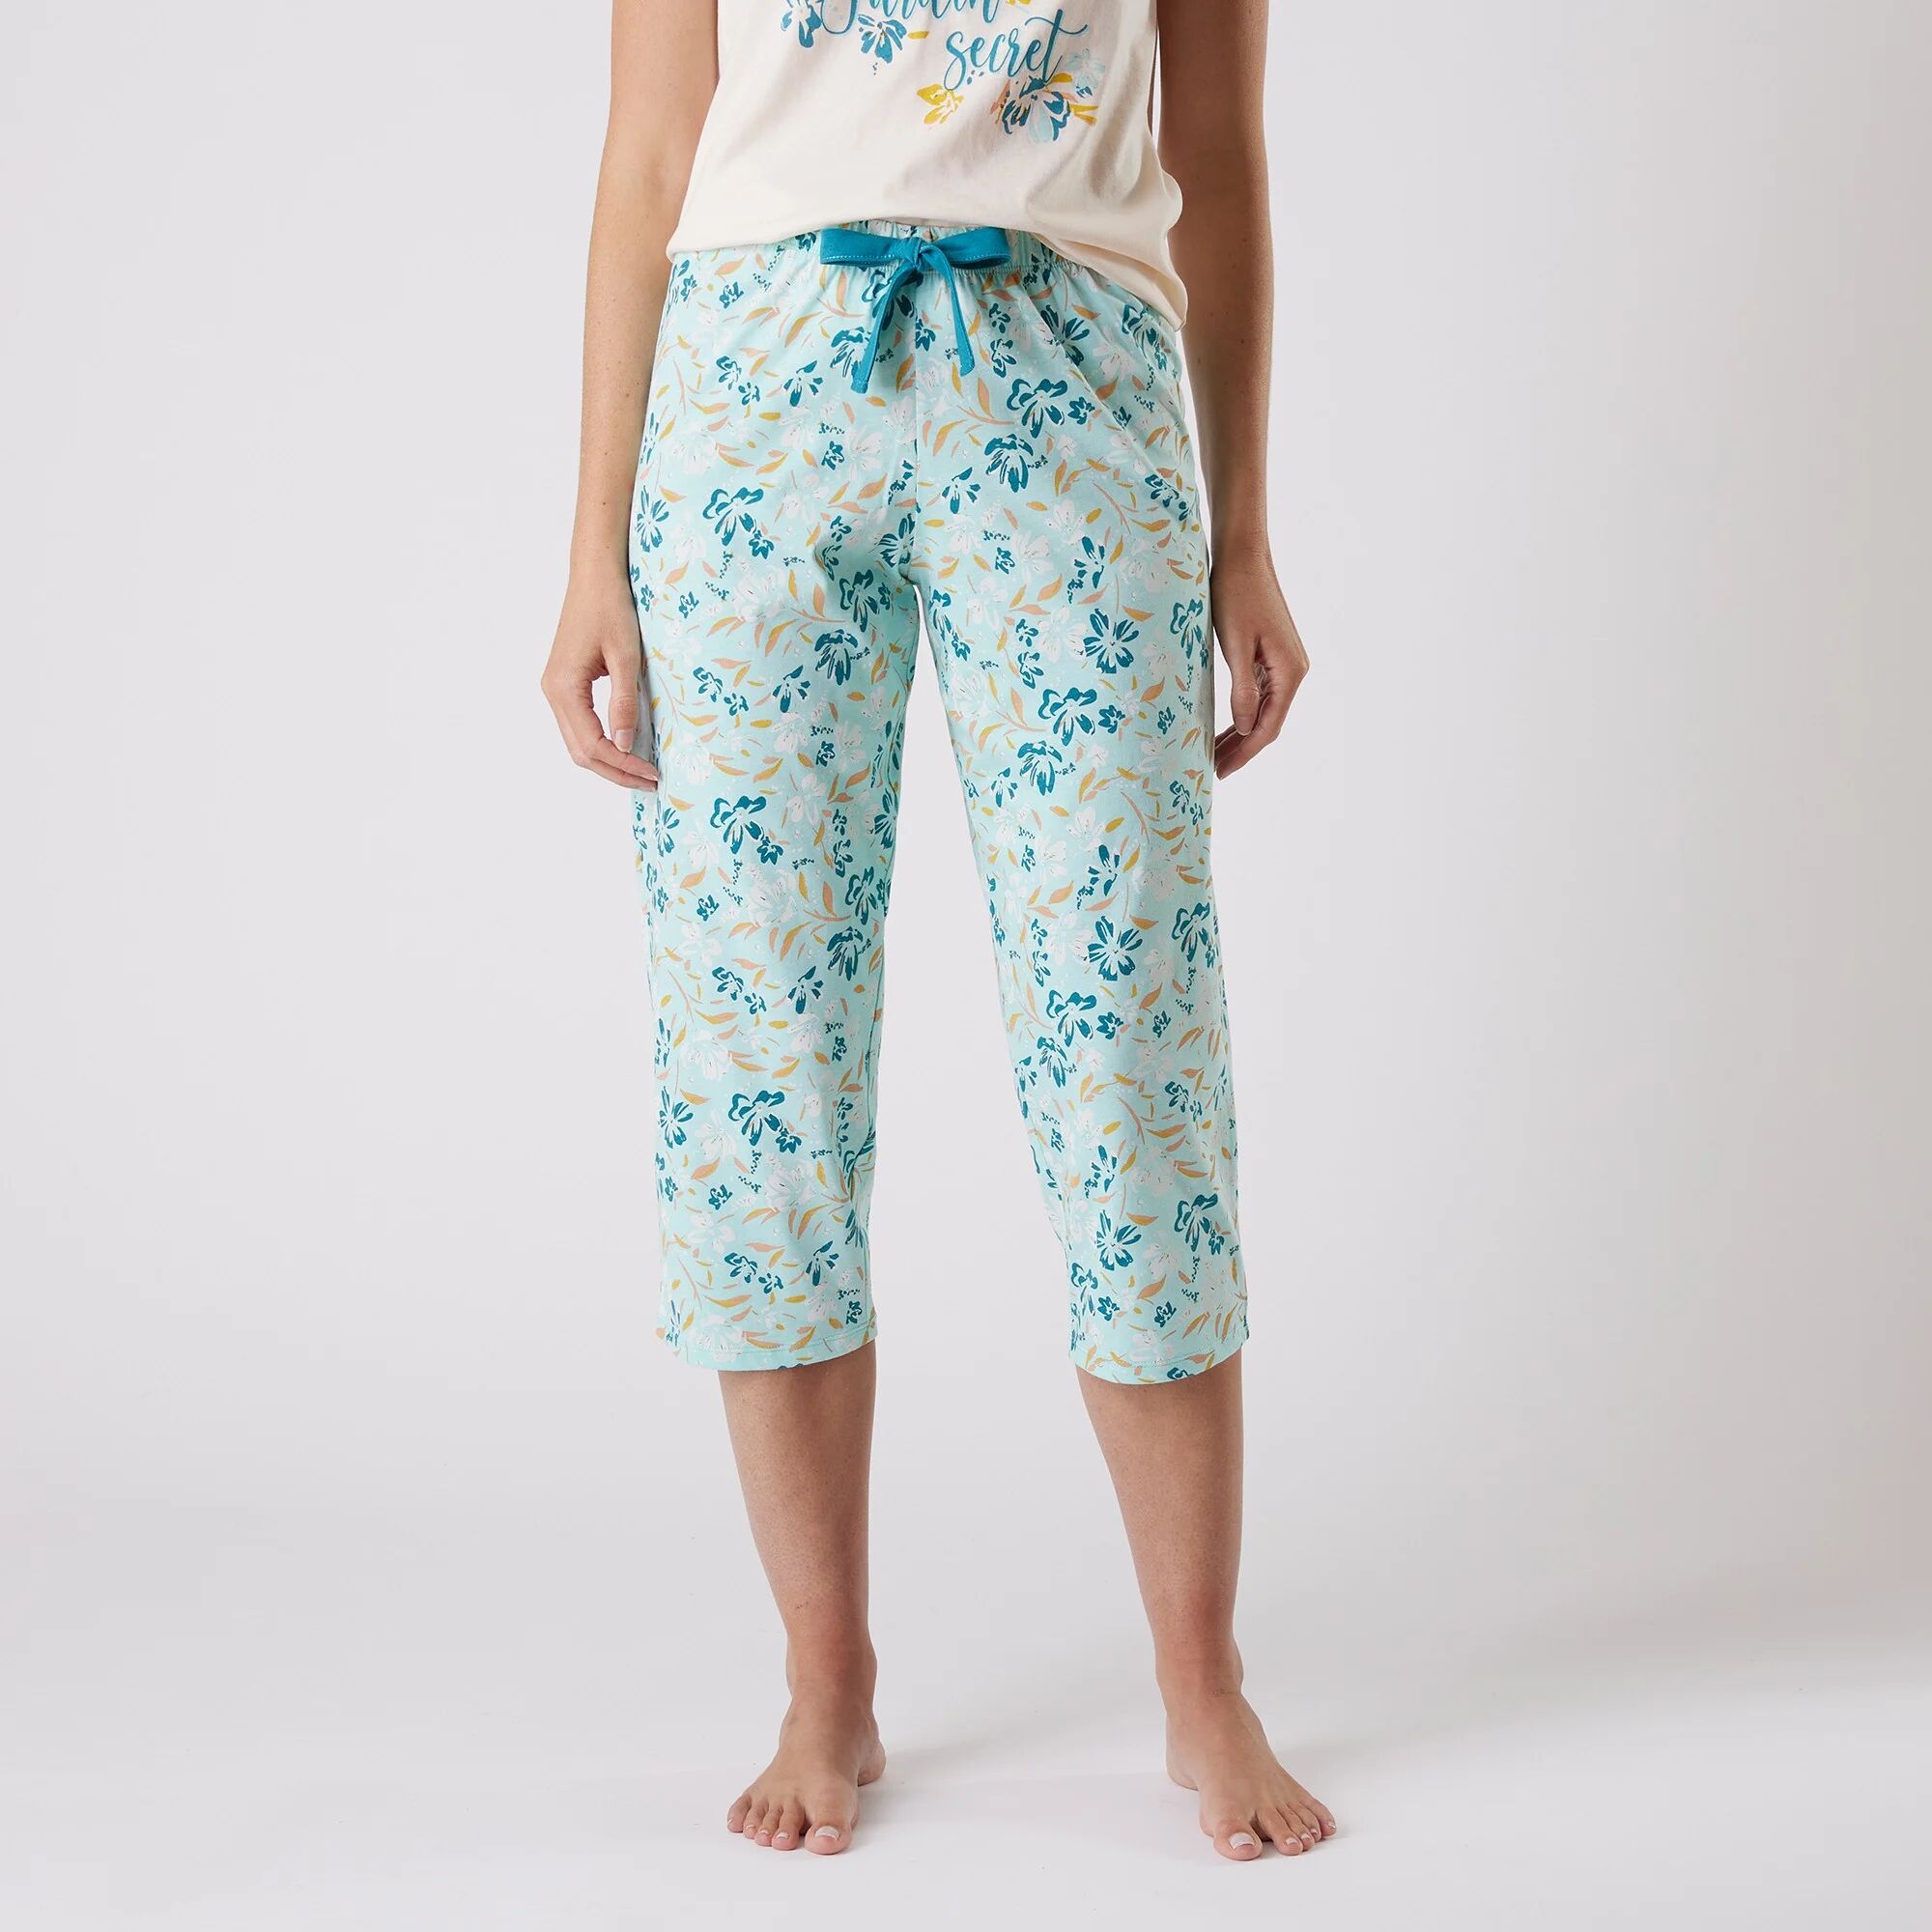 Pantalon court pyjama imprimé floral - BlancheporteLaissez-vous inspirer par cette ligne florale créée dans un esprit japonisant. Vous aimerez ce pantacourt très confortable à associer comme vous le souhaitez au tee-shirt assorti.34/36Turquoise